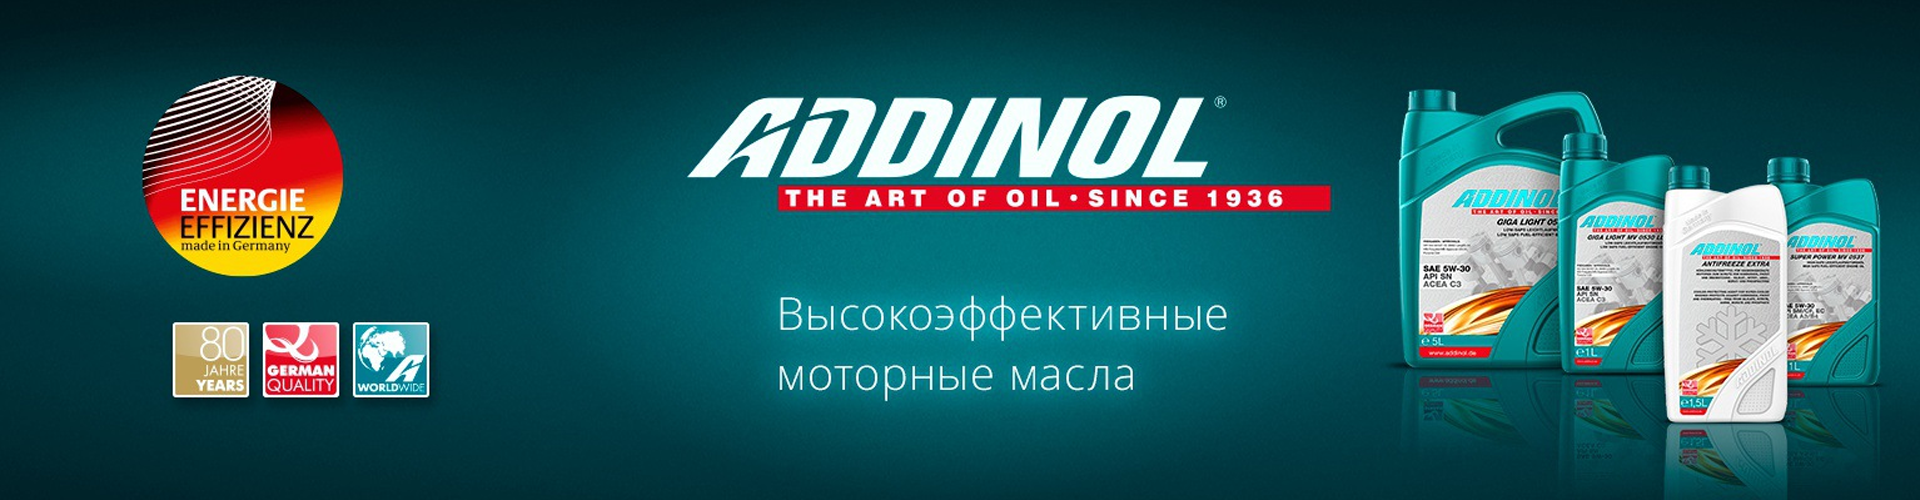 Автомобильные масла ADDINOL